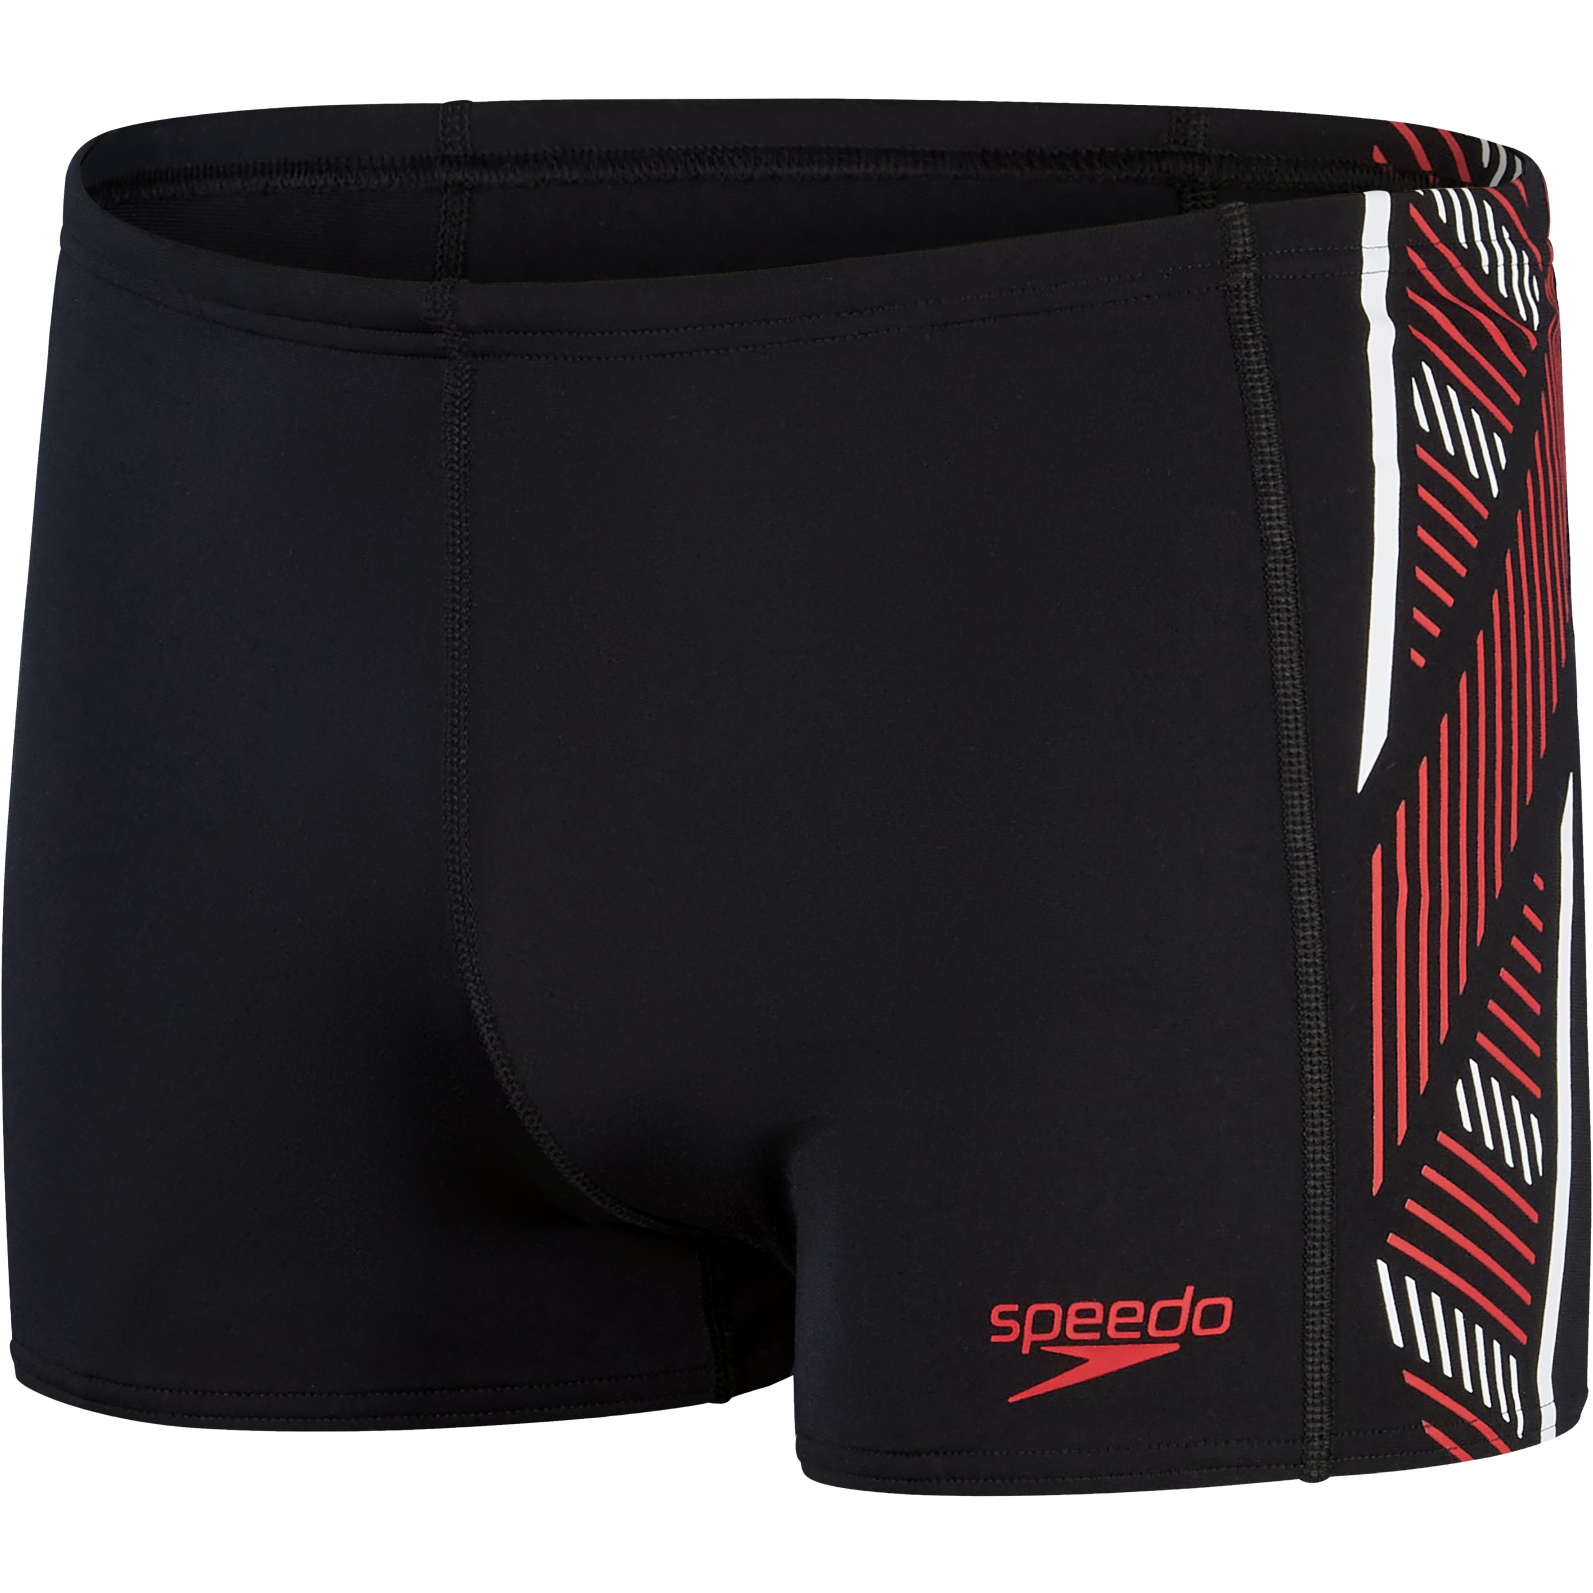 Produktbild von Speedo Tech Panel Aquashort - black/fed red/white